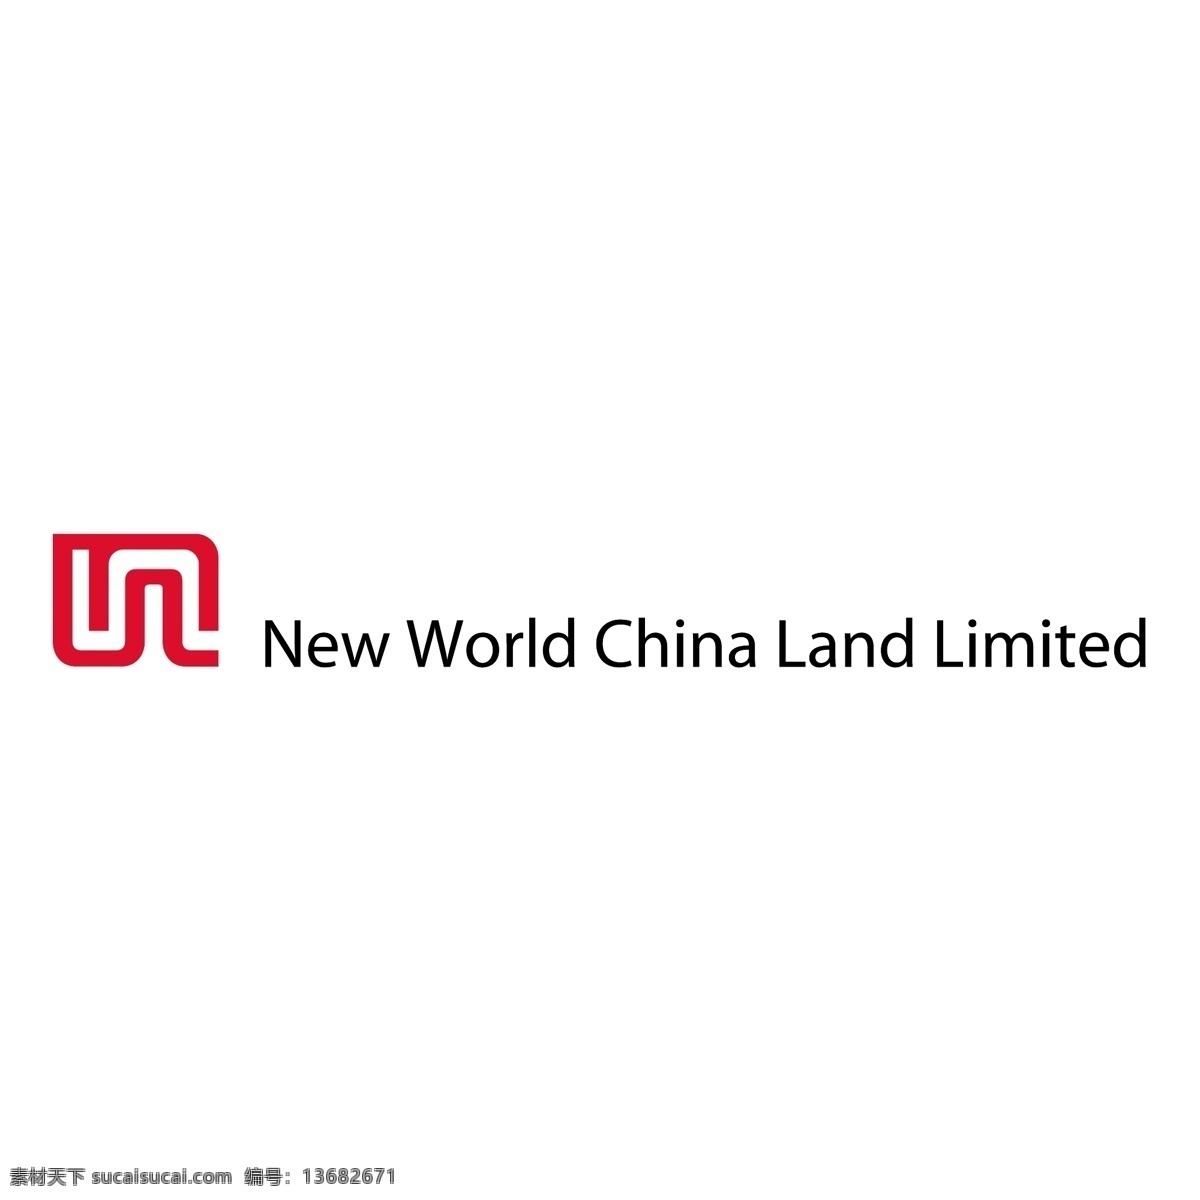 新世界 中国 地产 有限公司 自由 logo 标志 psd源文件 logo设计